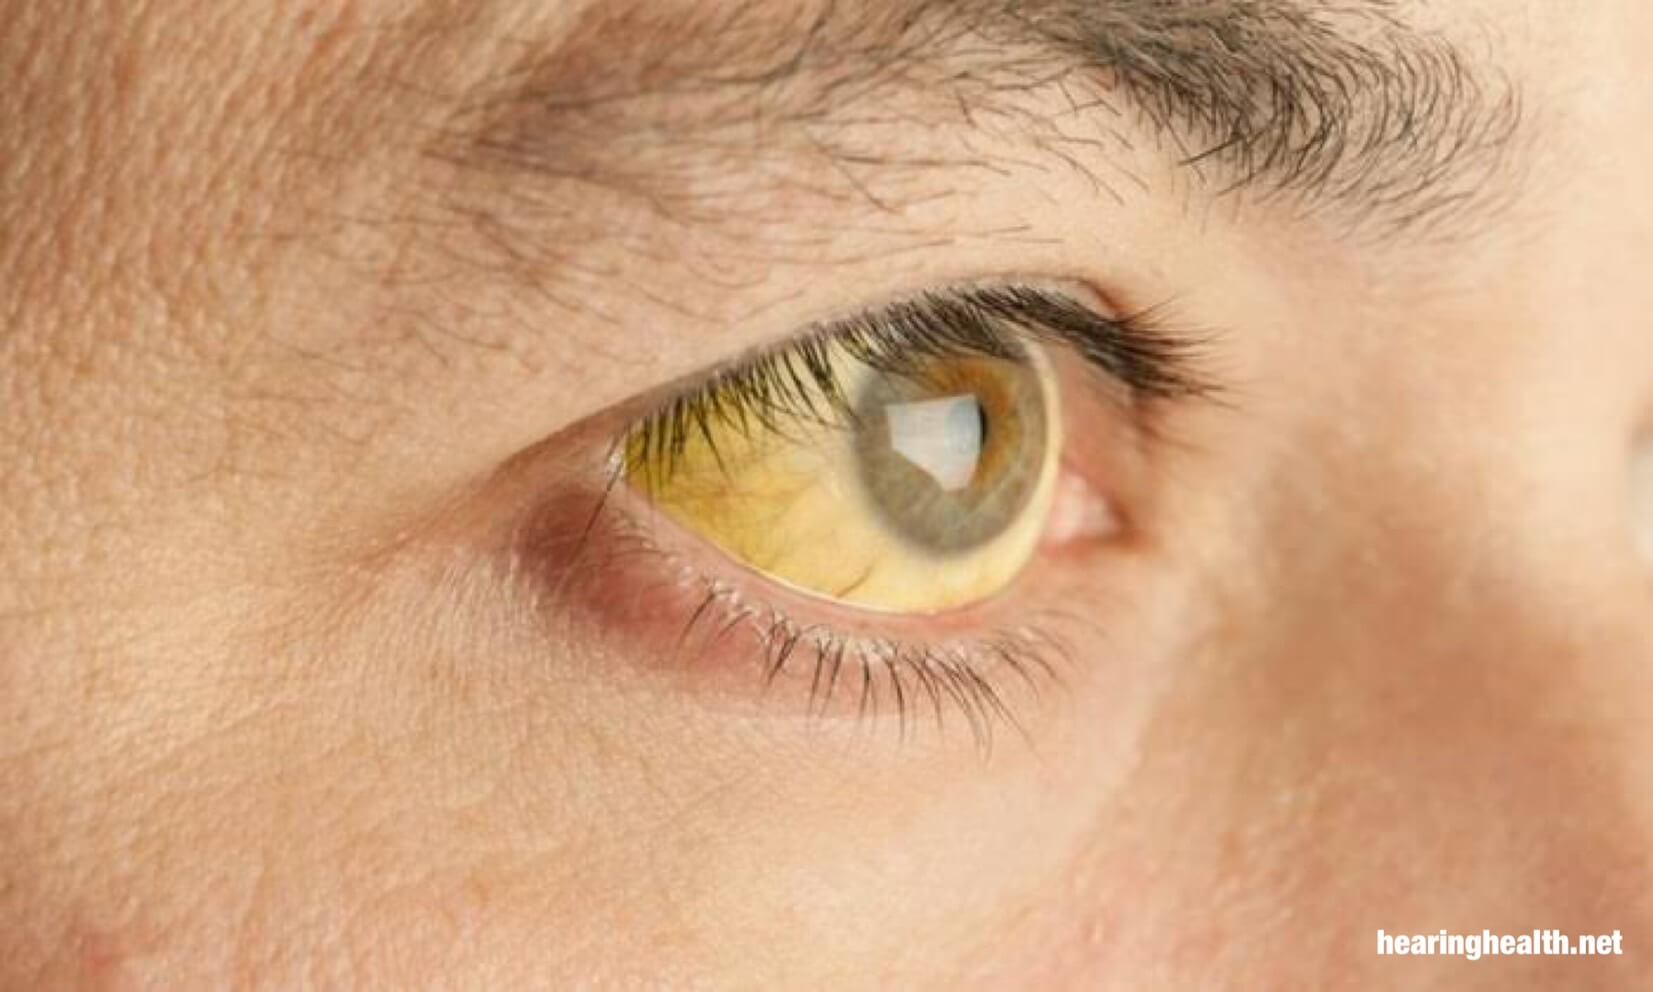 ดีซ่านเป็นภาวะที่ตาขาวเปลี่ยนเป็นสีเหลือง